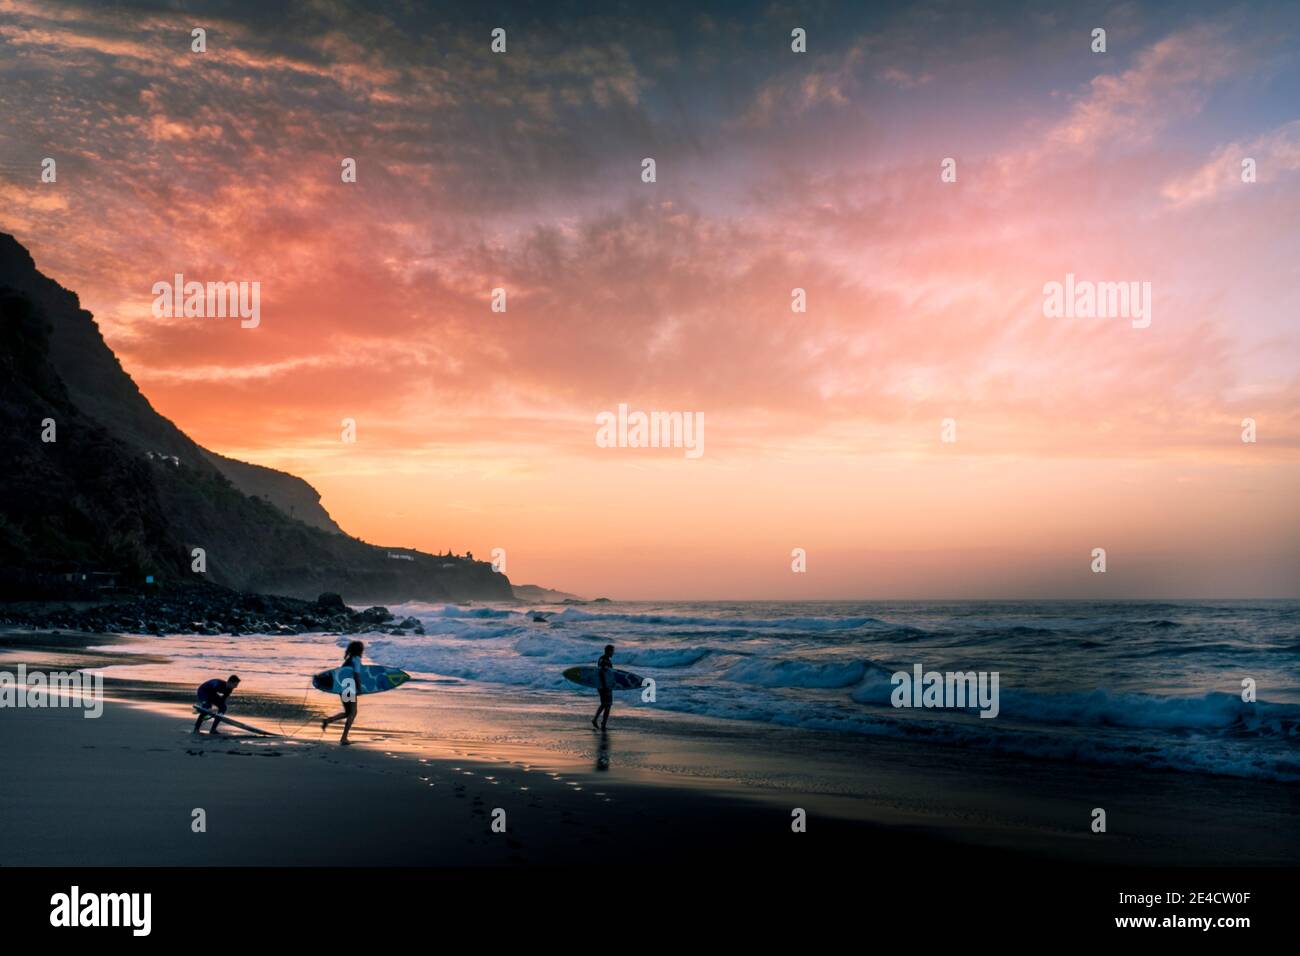 Toller Sonnenuntergang am Strand mit einer Gruppe von Surfern Auf dem Wasser - Sport Meer Aktivität im Sommer Urlaub für aktive Menschen Stockfoto